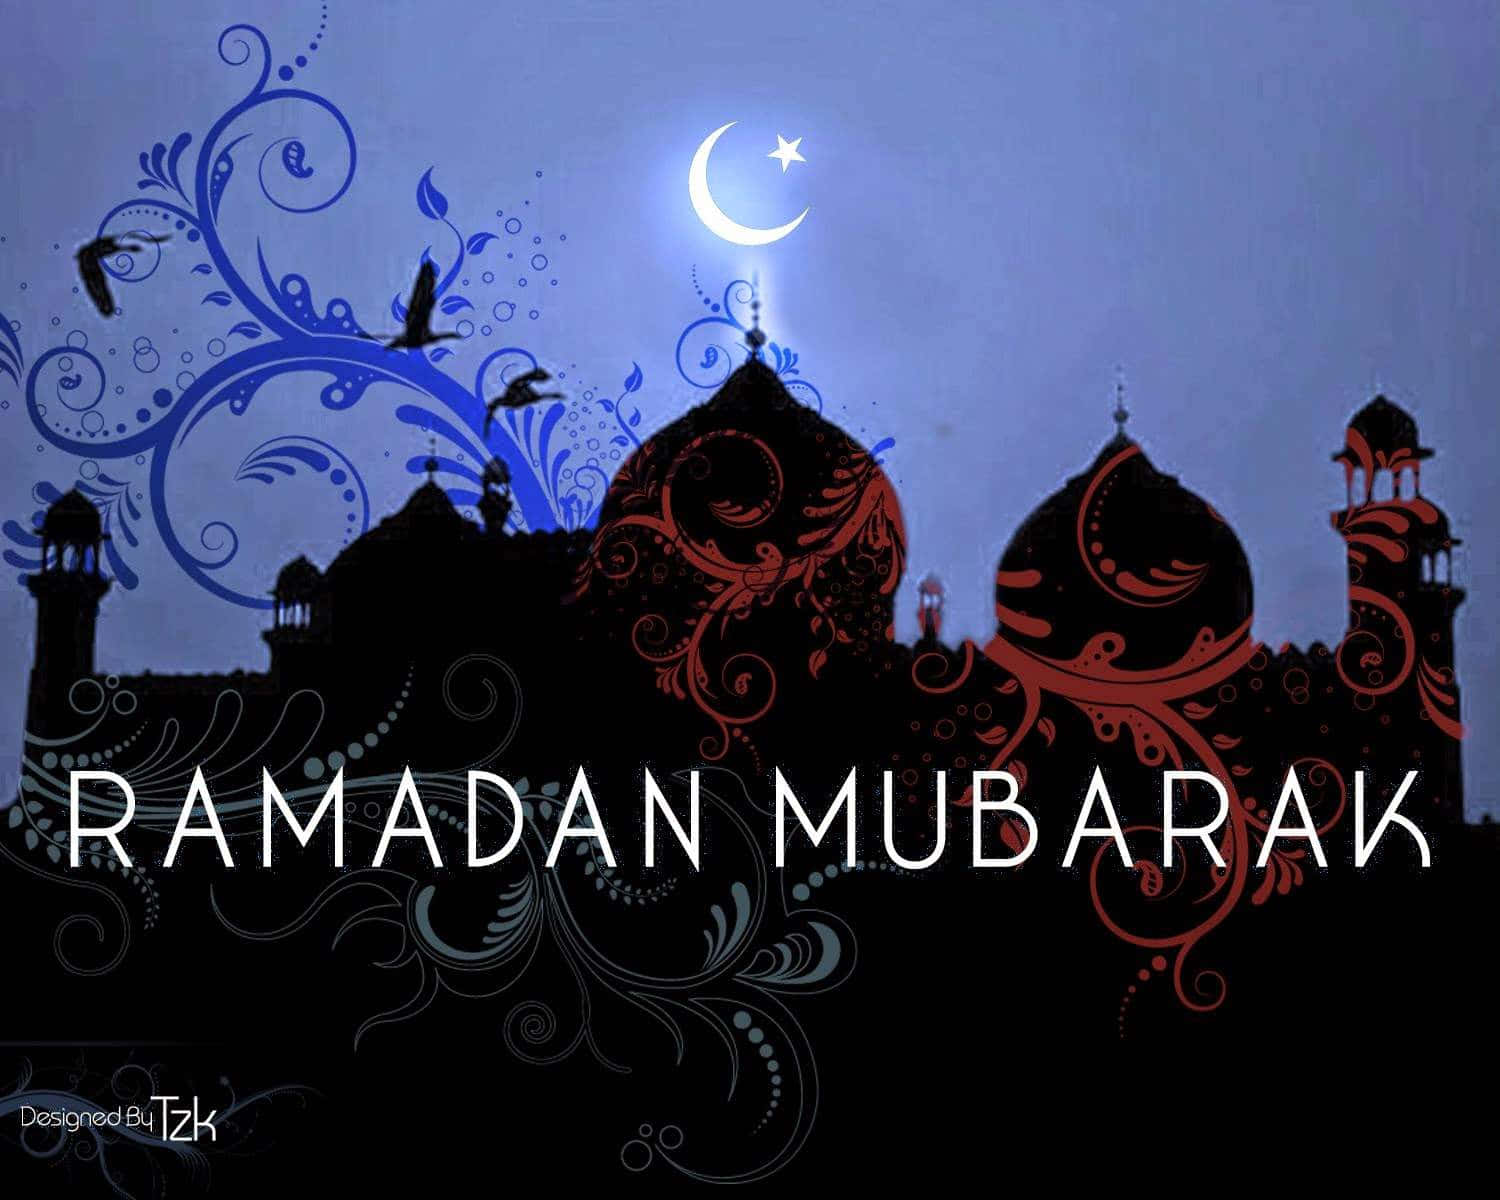 Fundodo Ramadan Mubarak